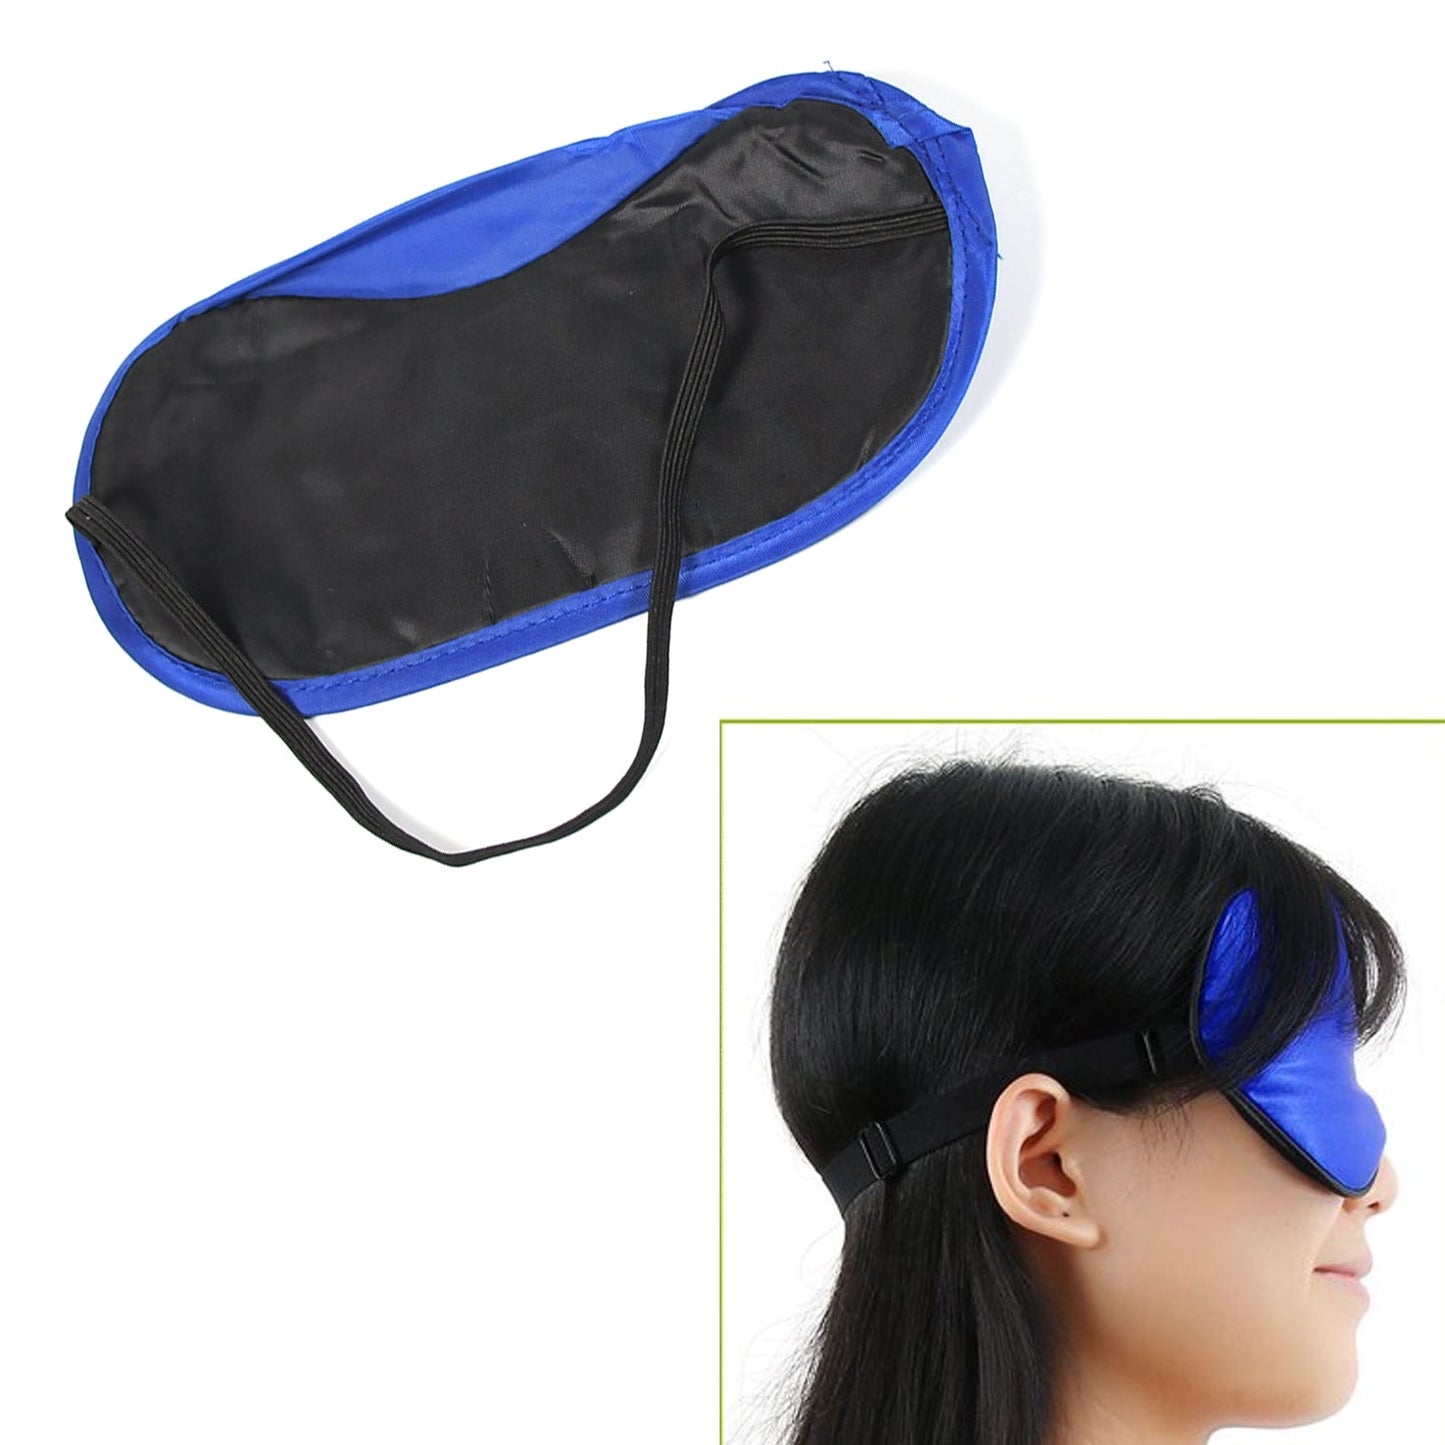 6908 New Men, Women Blindfold Soft Satin Sleep Mask Eye Mask Blind fold Block Out Light for Travel, Shift Work & Meditation (1pc)